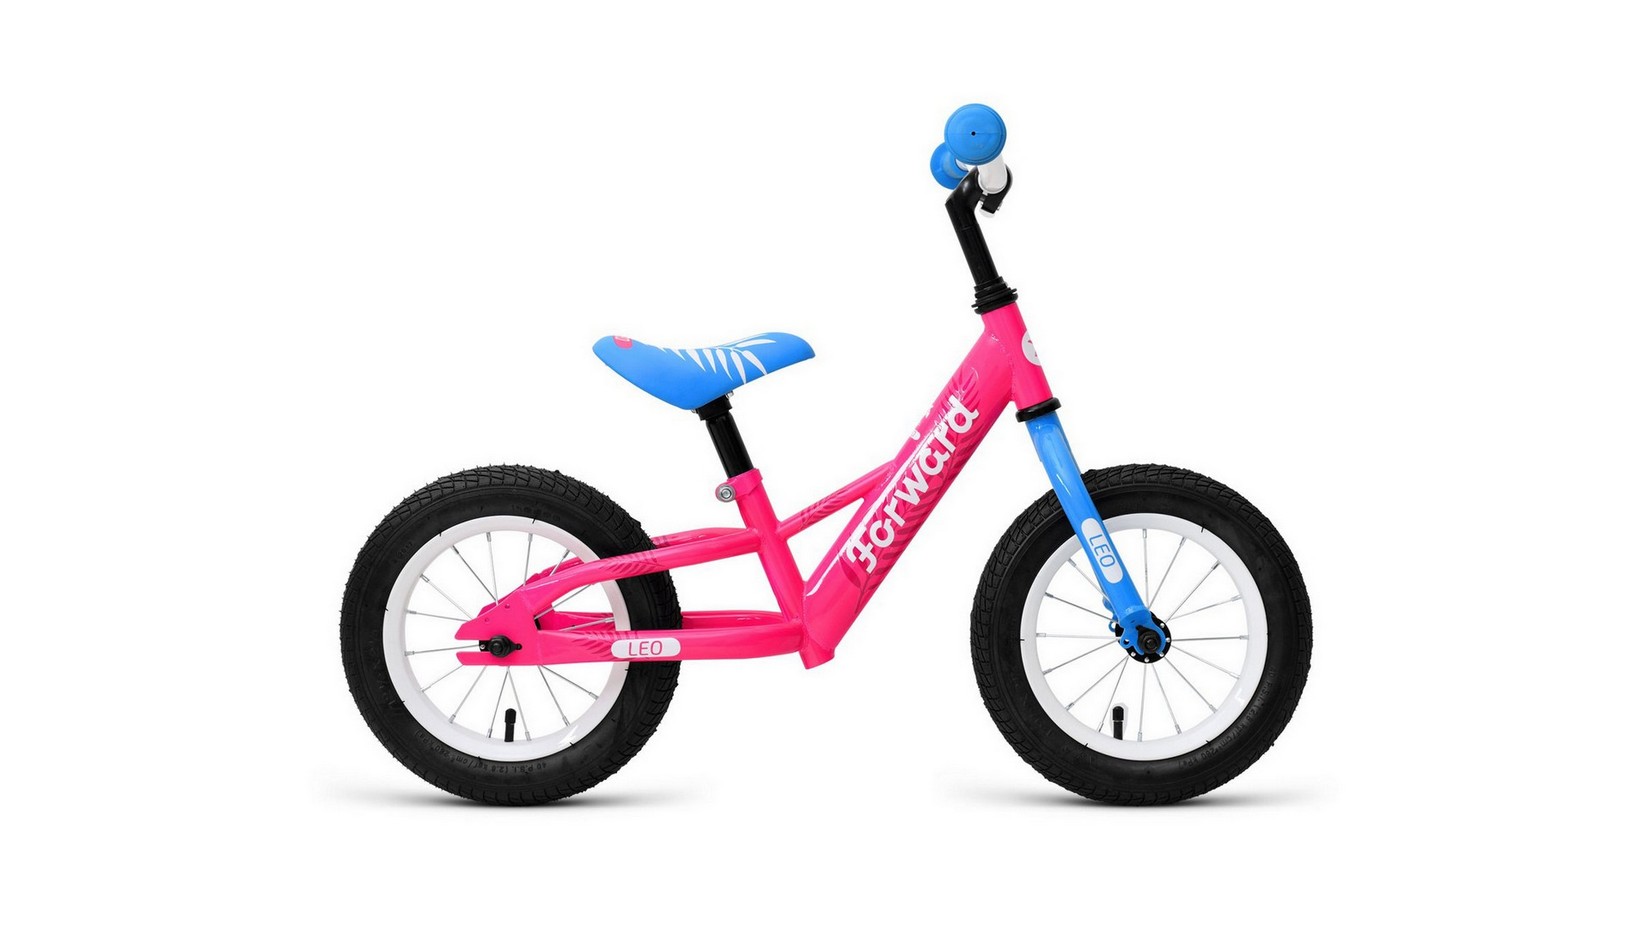 Беговел Forward LEO 2021 розовый 1BKW1R1A1002 женский велосипед stinger laguna pro 27 5 год 2021 розовый ростовка 17